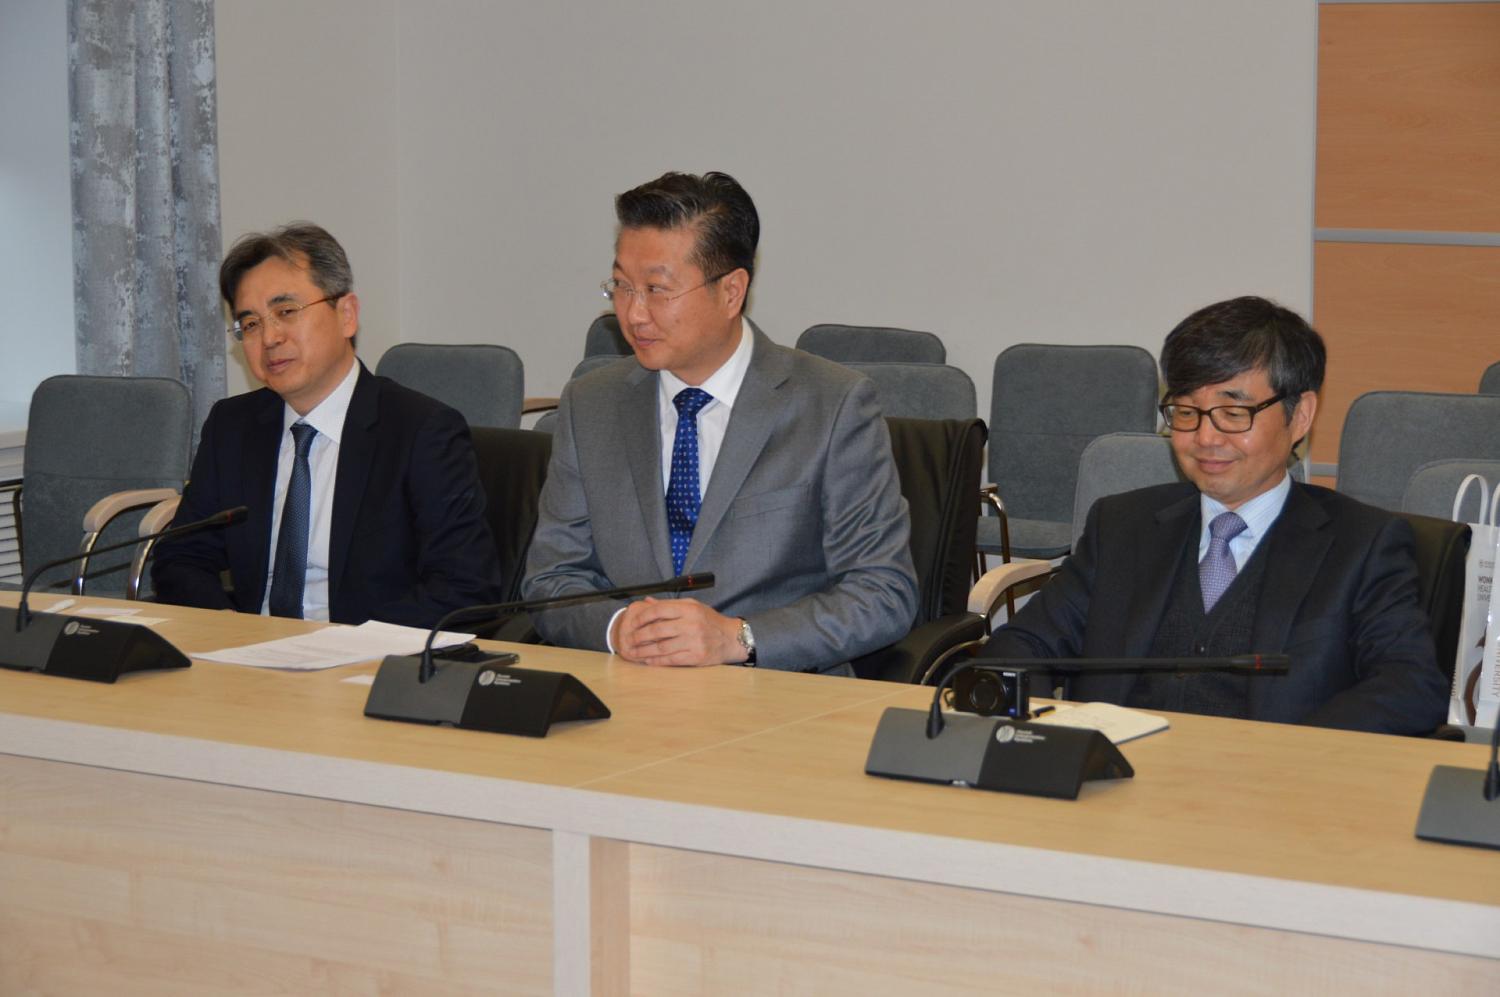 Гильдия производителей медицинских товаров и услуг подписала соглашение о сотрудничестве с партнерами из Южной Кореи